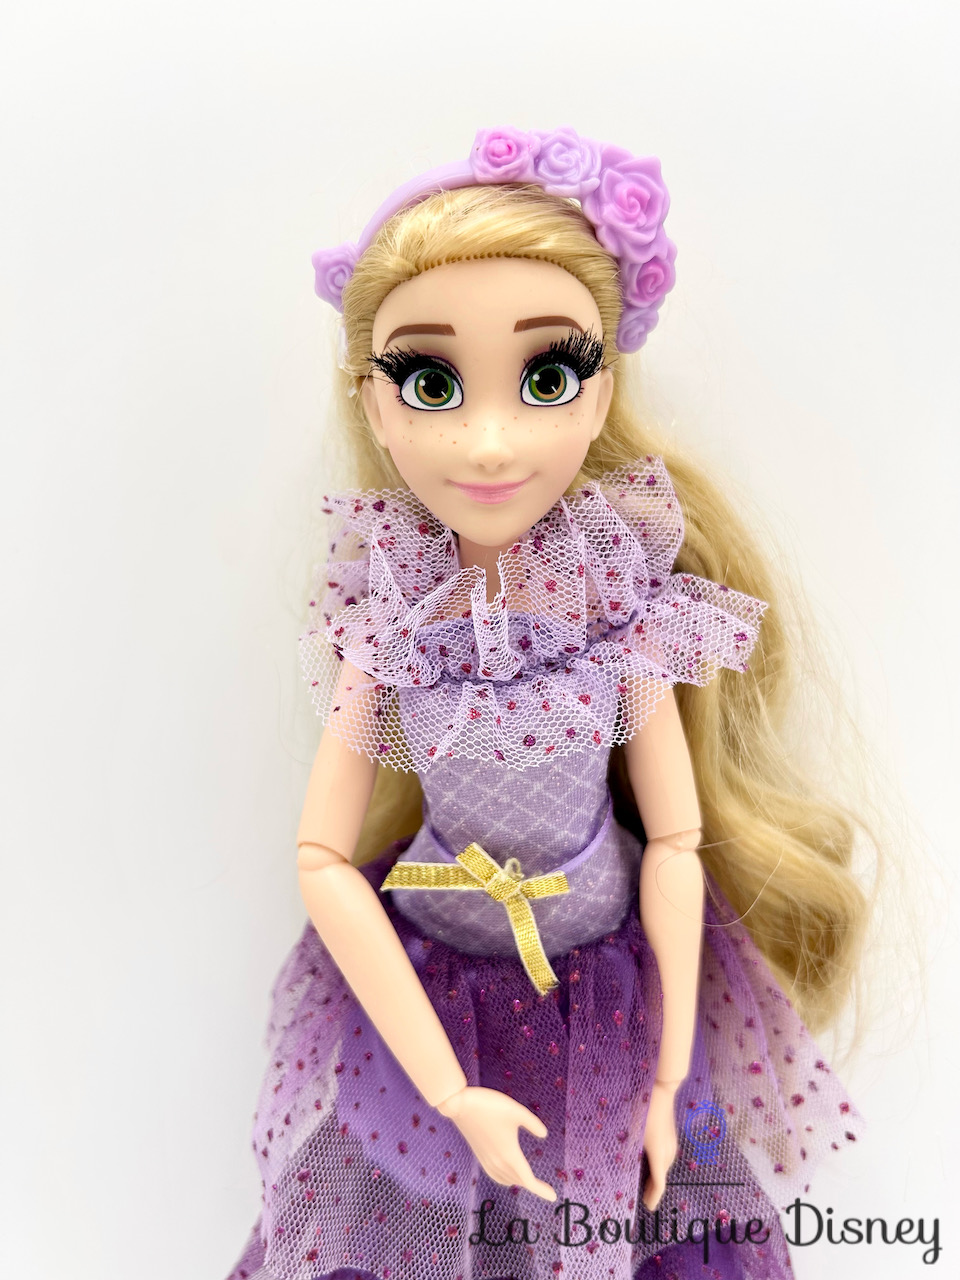 Poupée Belle La belle et la bête Disney Princesse Série Style Hasbro 2017  princesse robe jaune 30 cm - Poupées/Poupées Disney Mattel / Hasbro / Jakks  - La Boutique Disney